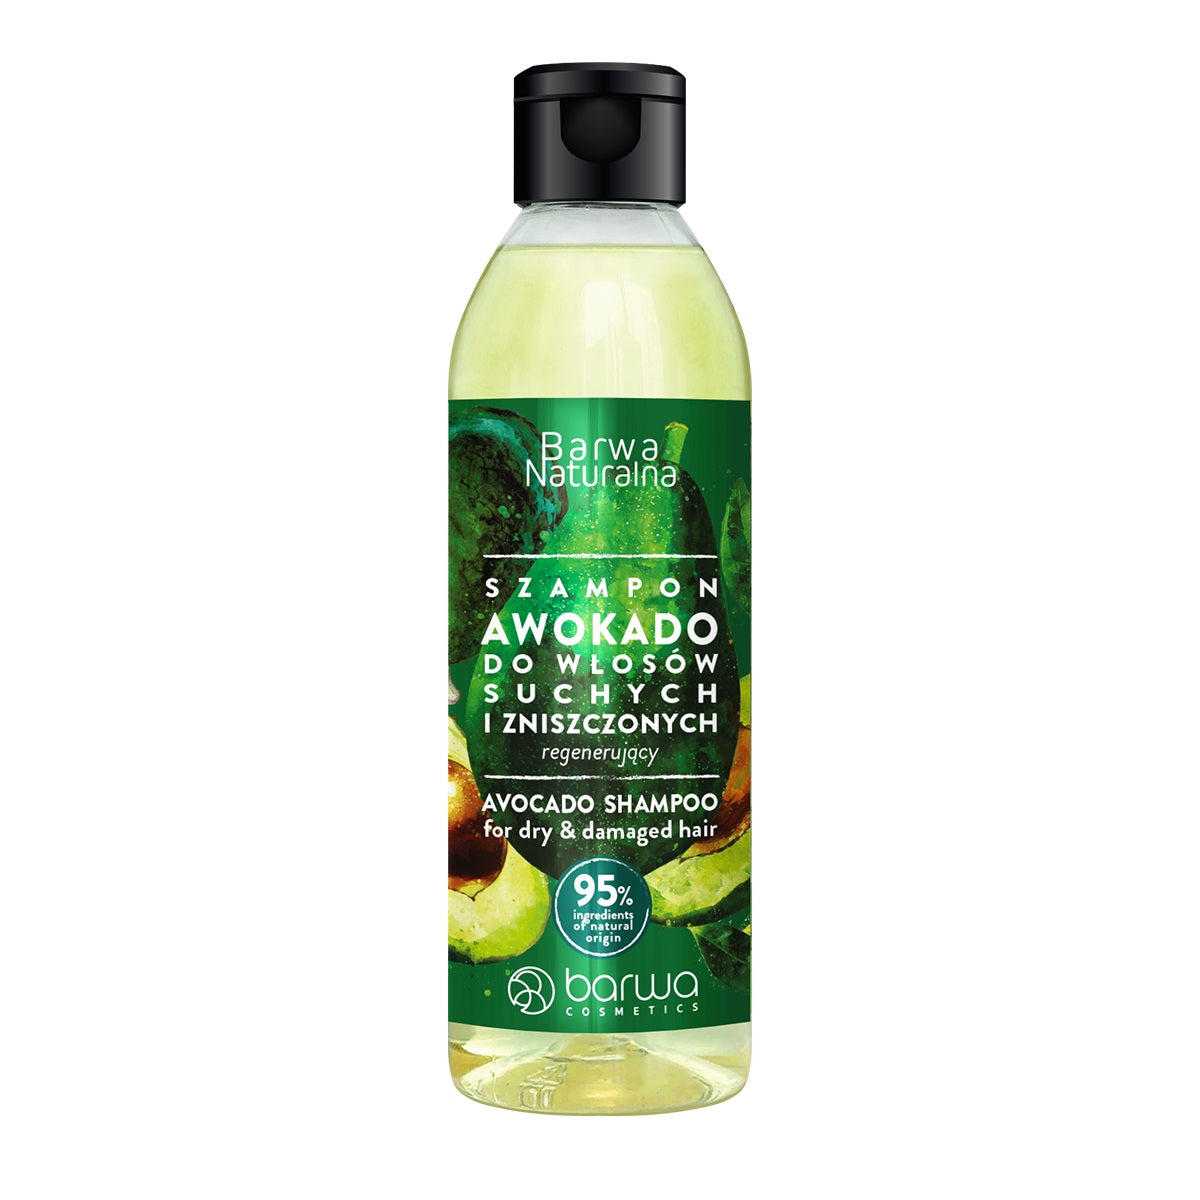 Barwa Натуральный регенерирующий шампунь для волос Авокадо 300мл cantu увлажняющий шампунь с авокадо для сухих и ломких волос 400 мл 13 5 жидк